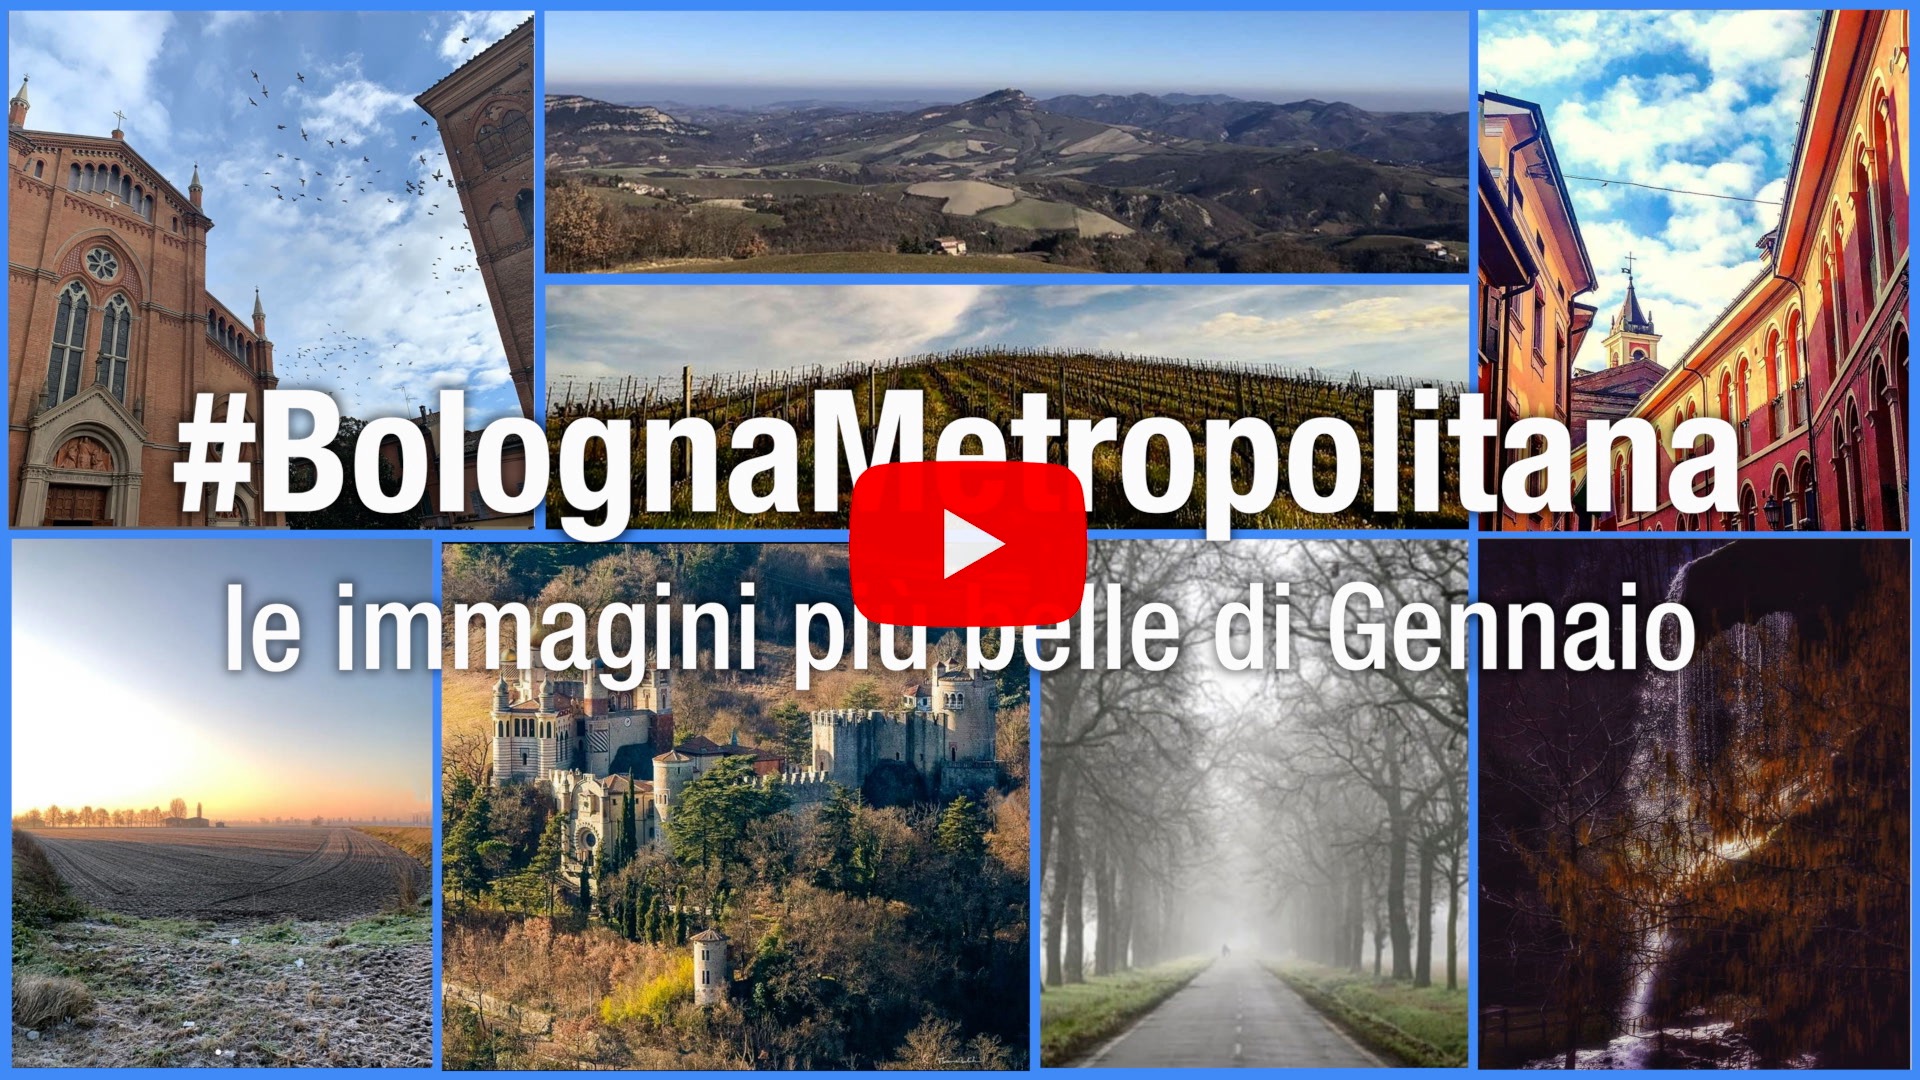 #BolognaMetropolitana - Le immagini più belle di gennaio 2020